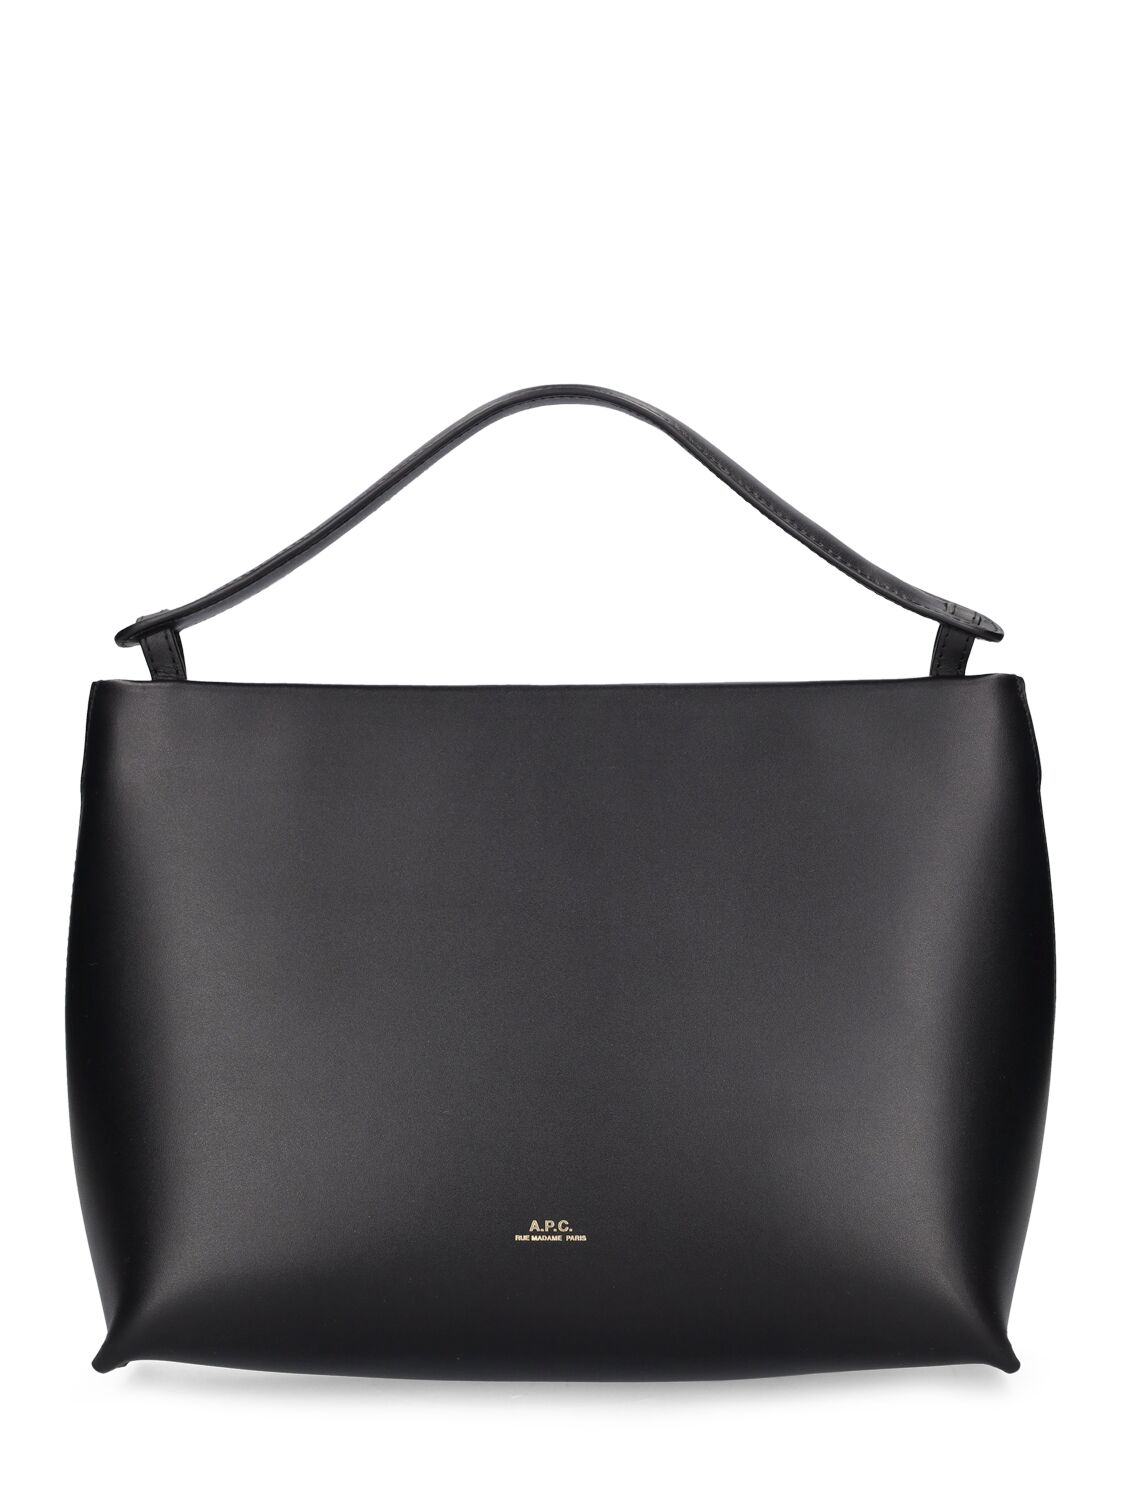 Apc Ashley Leather Shoulder Bag In Black